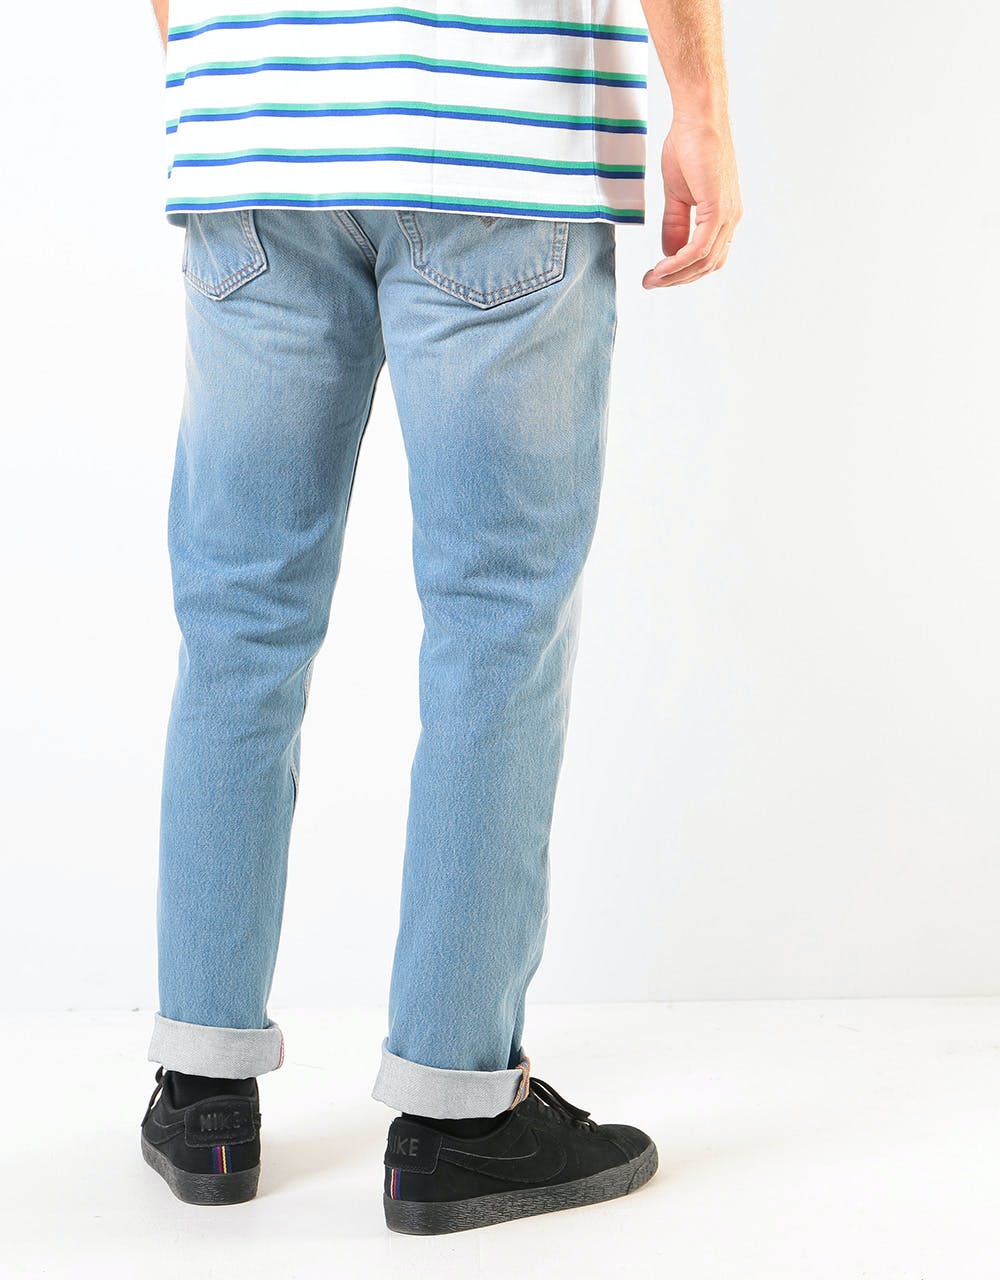 Levi's Skateboarding 511® Denim Jeans - Jumper